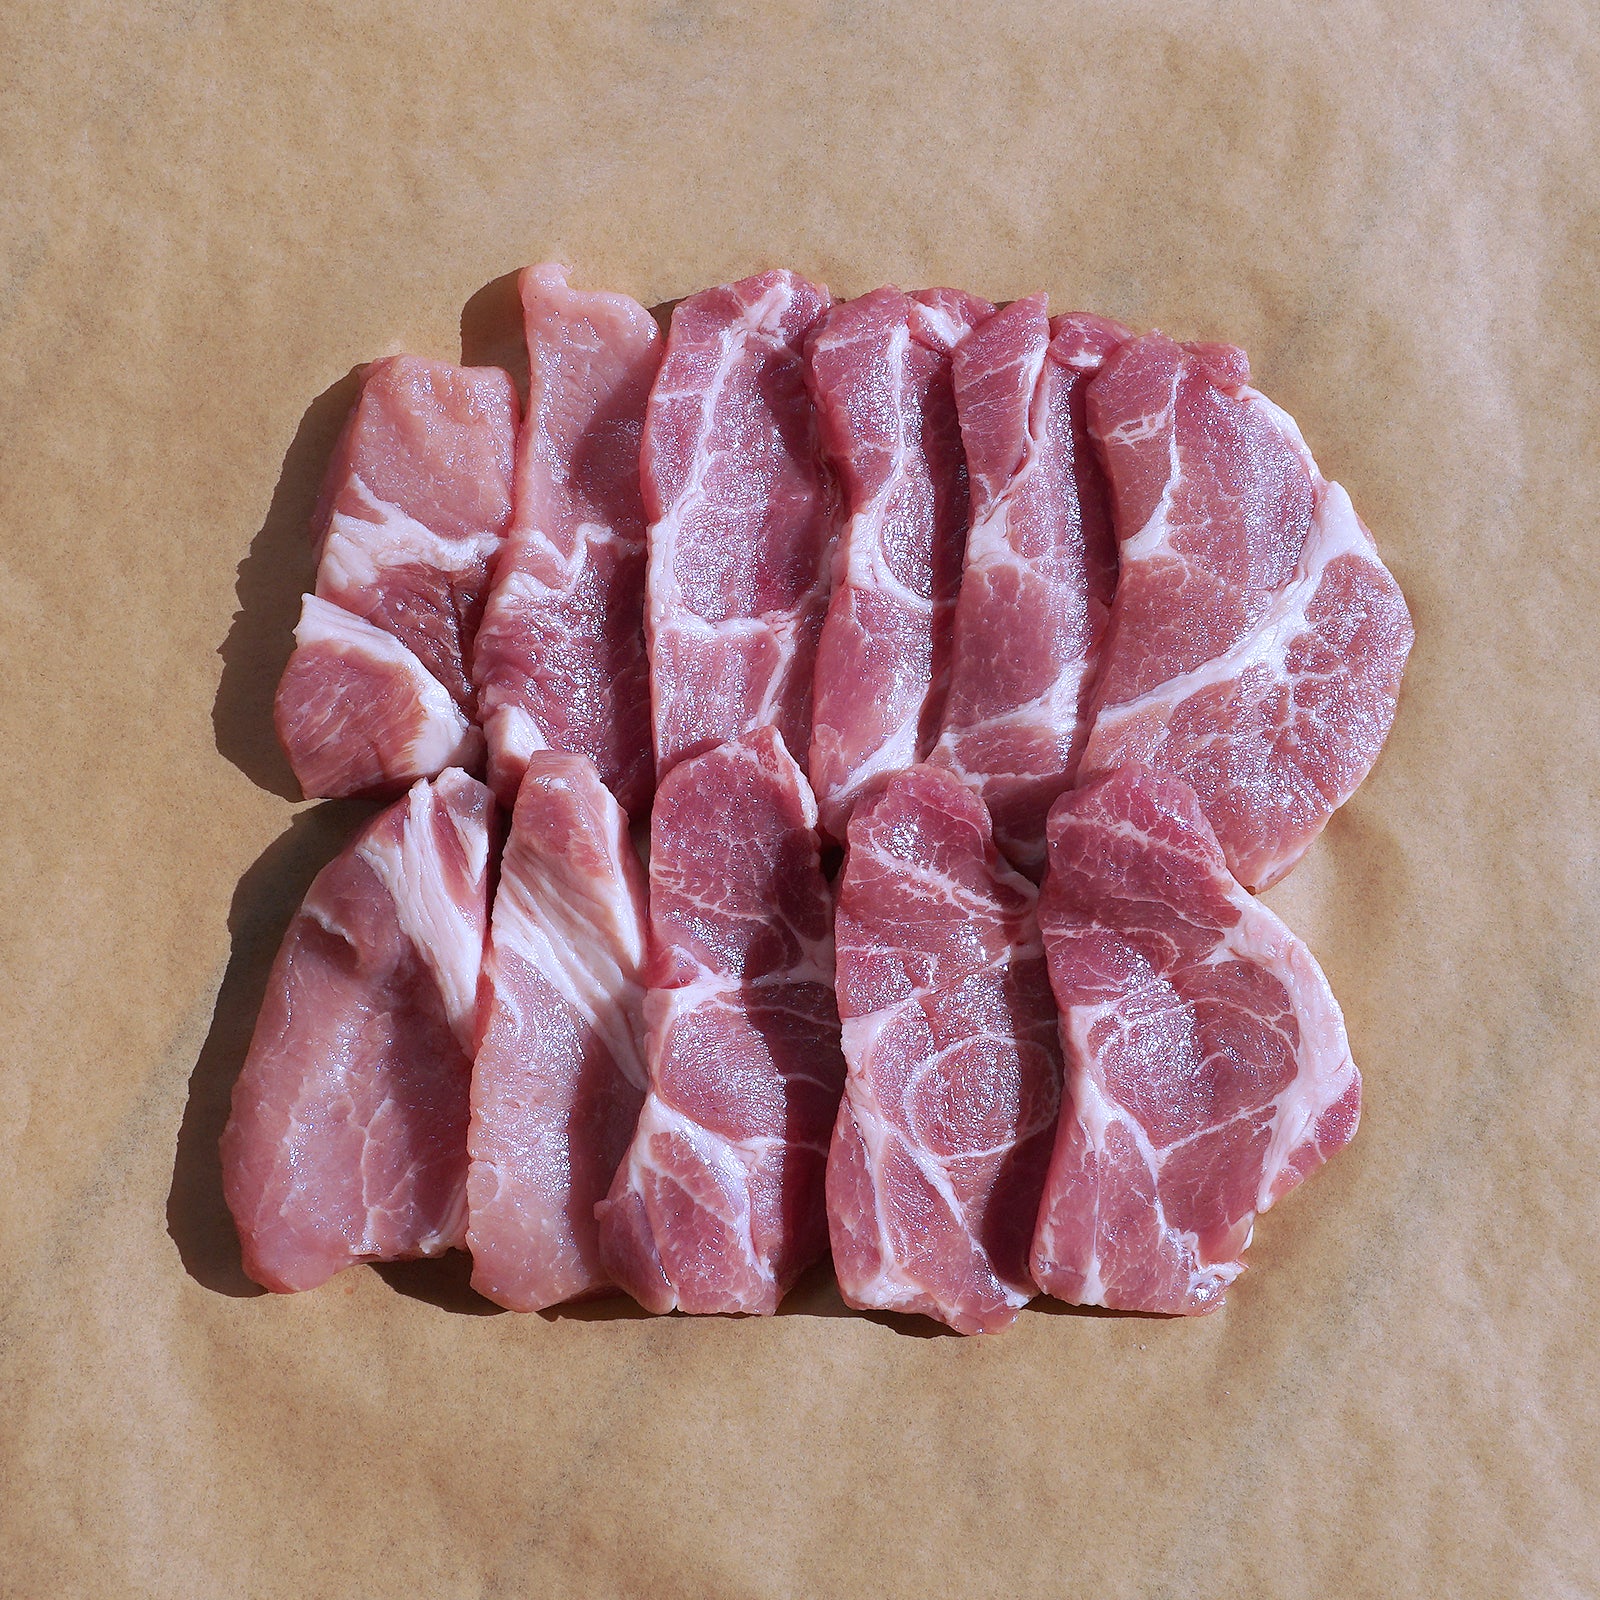 放牧豚 肩ロース 焼肉用 スライス オーストラリア産 (300g) ホライズンファームズ